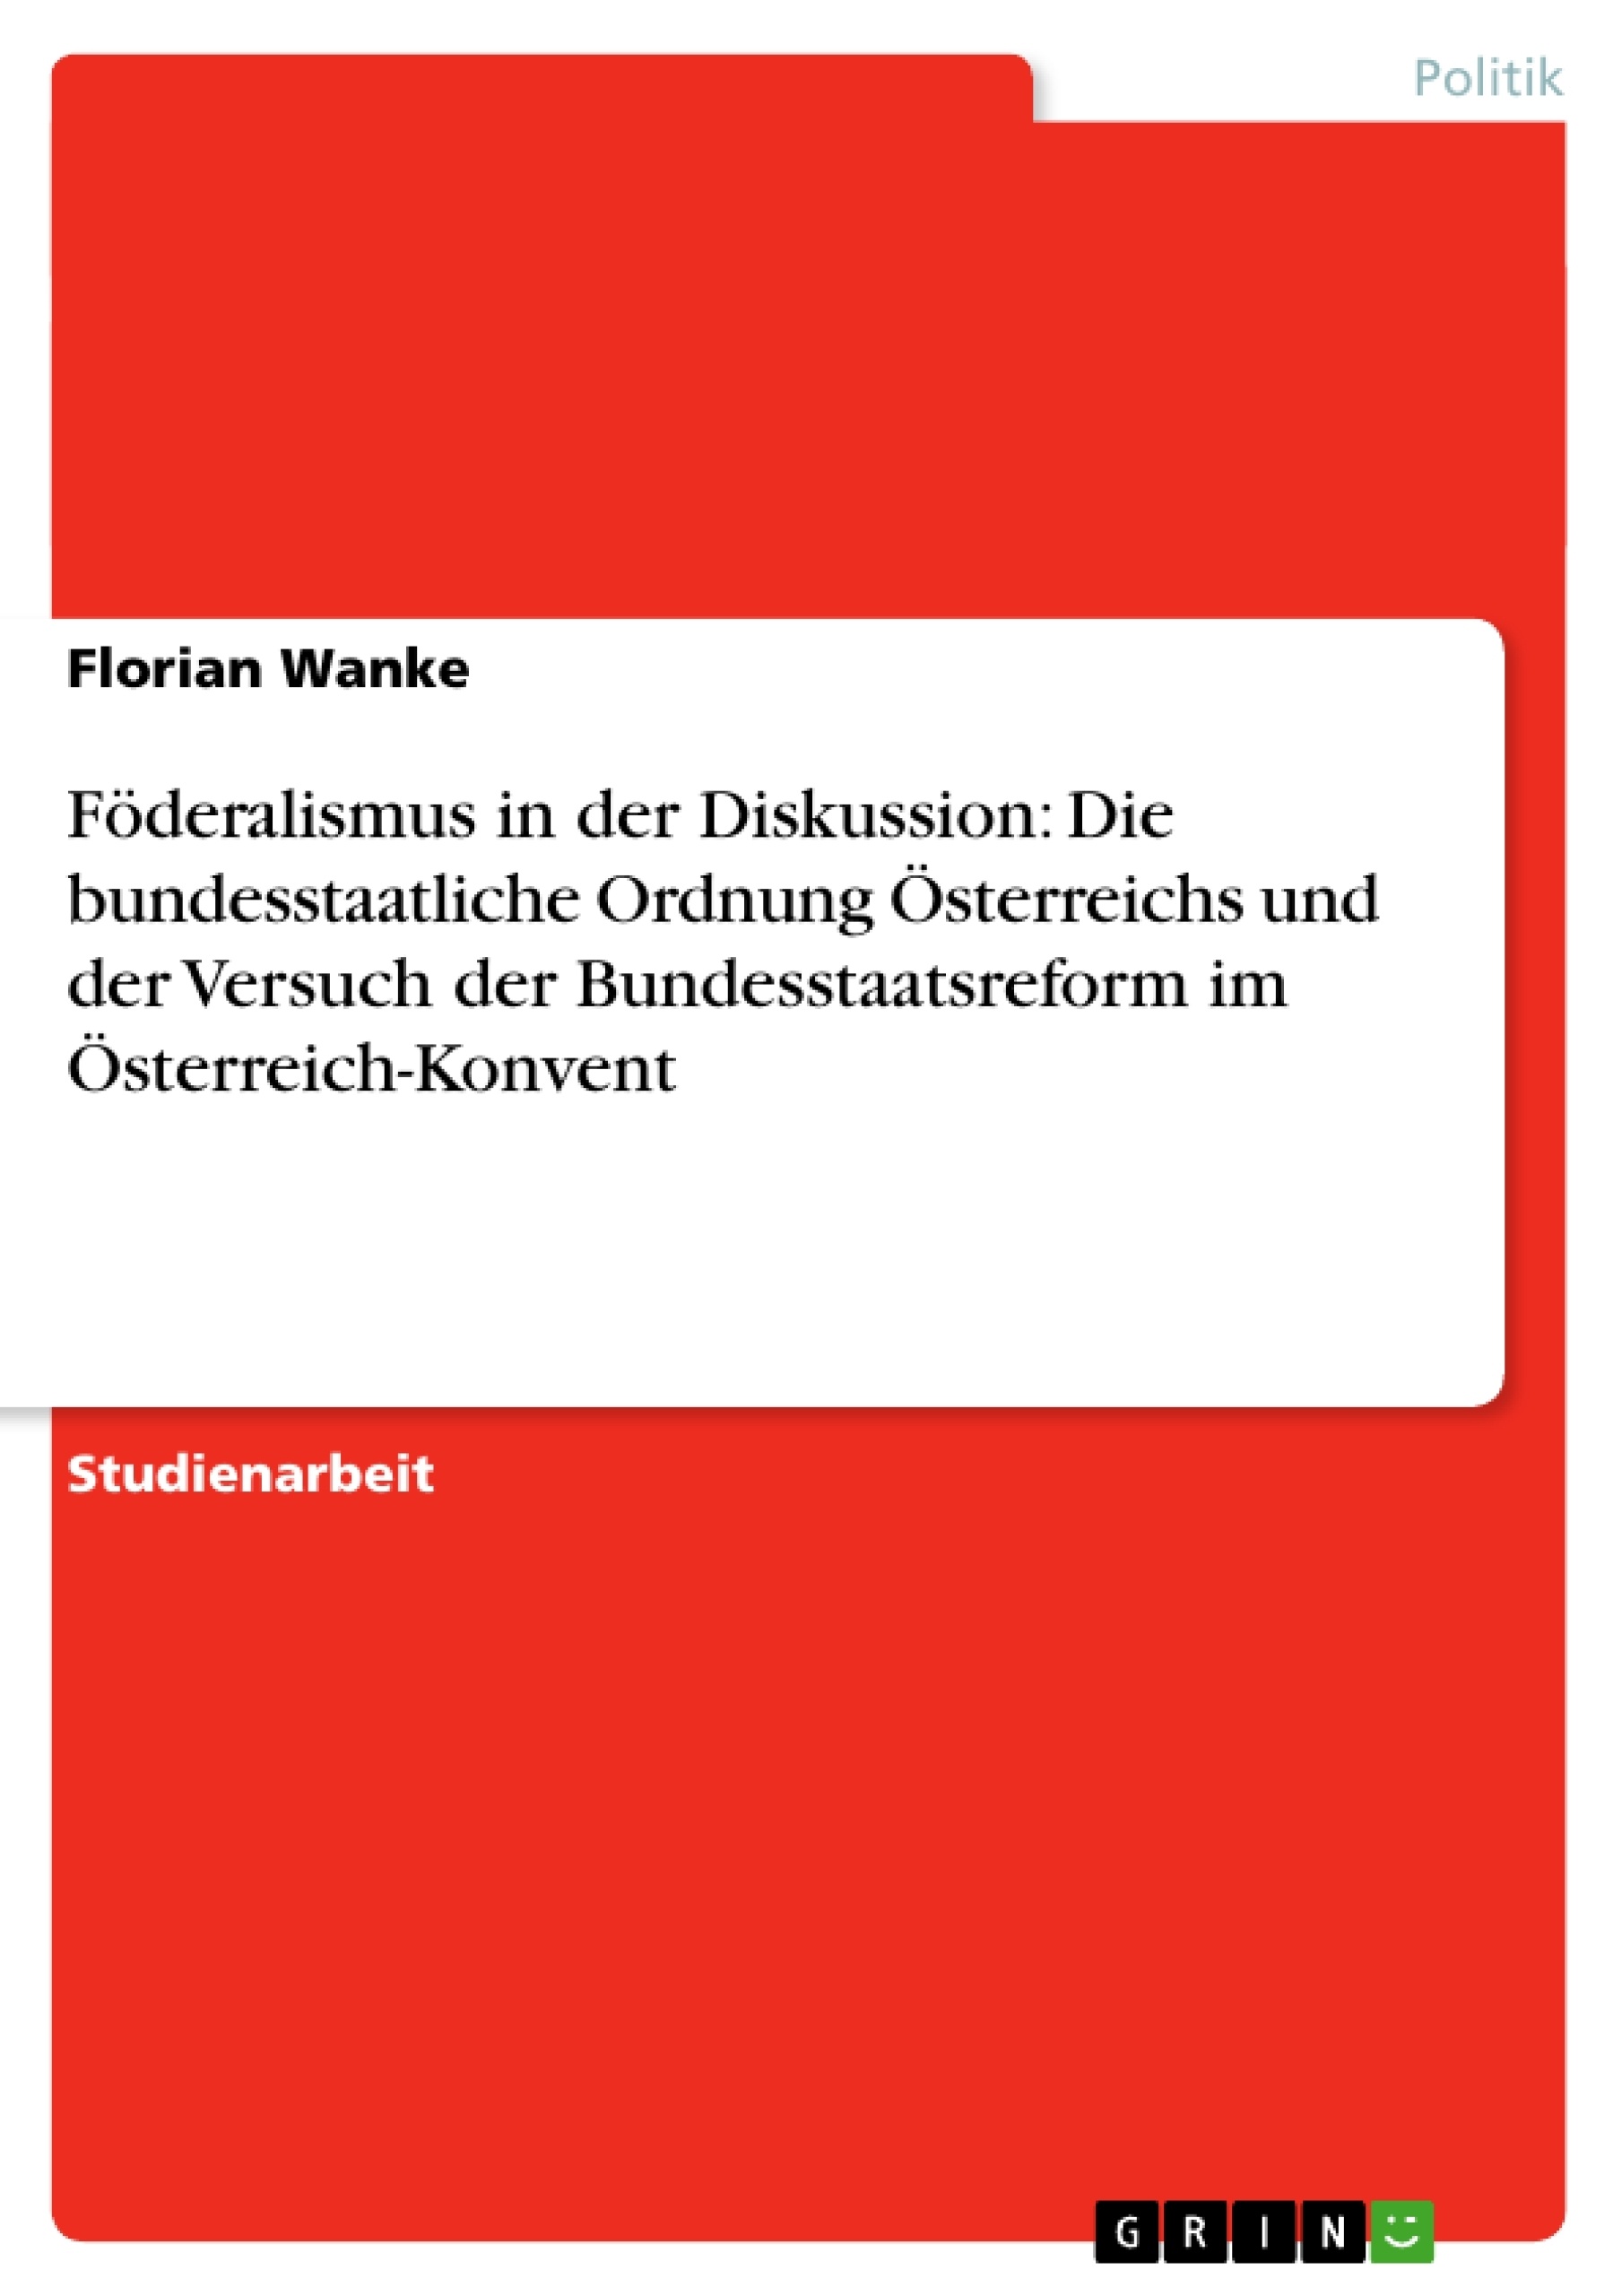 Title: Föderalismus in der Diskussion: Die bundesstaatliche Ordnung Österreichs und der Versuch der Bundesstaatsreform im Österreich-Konvent